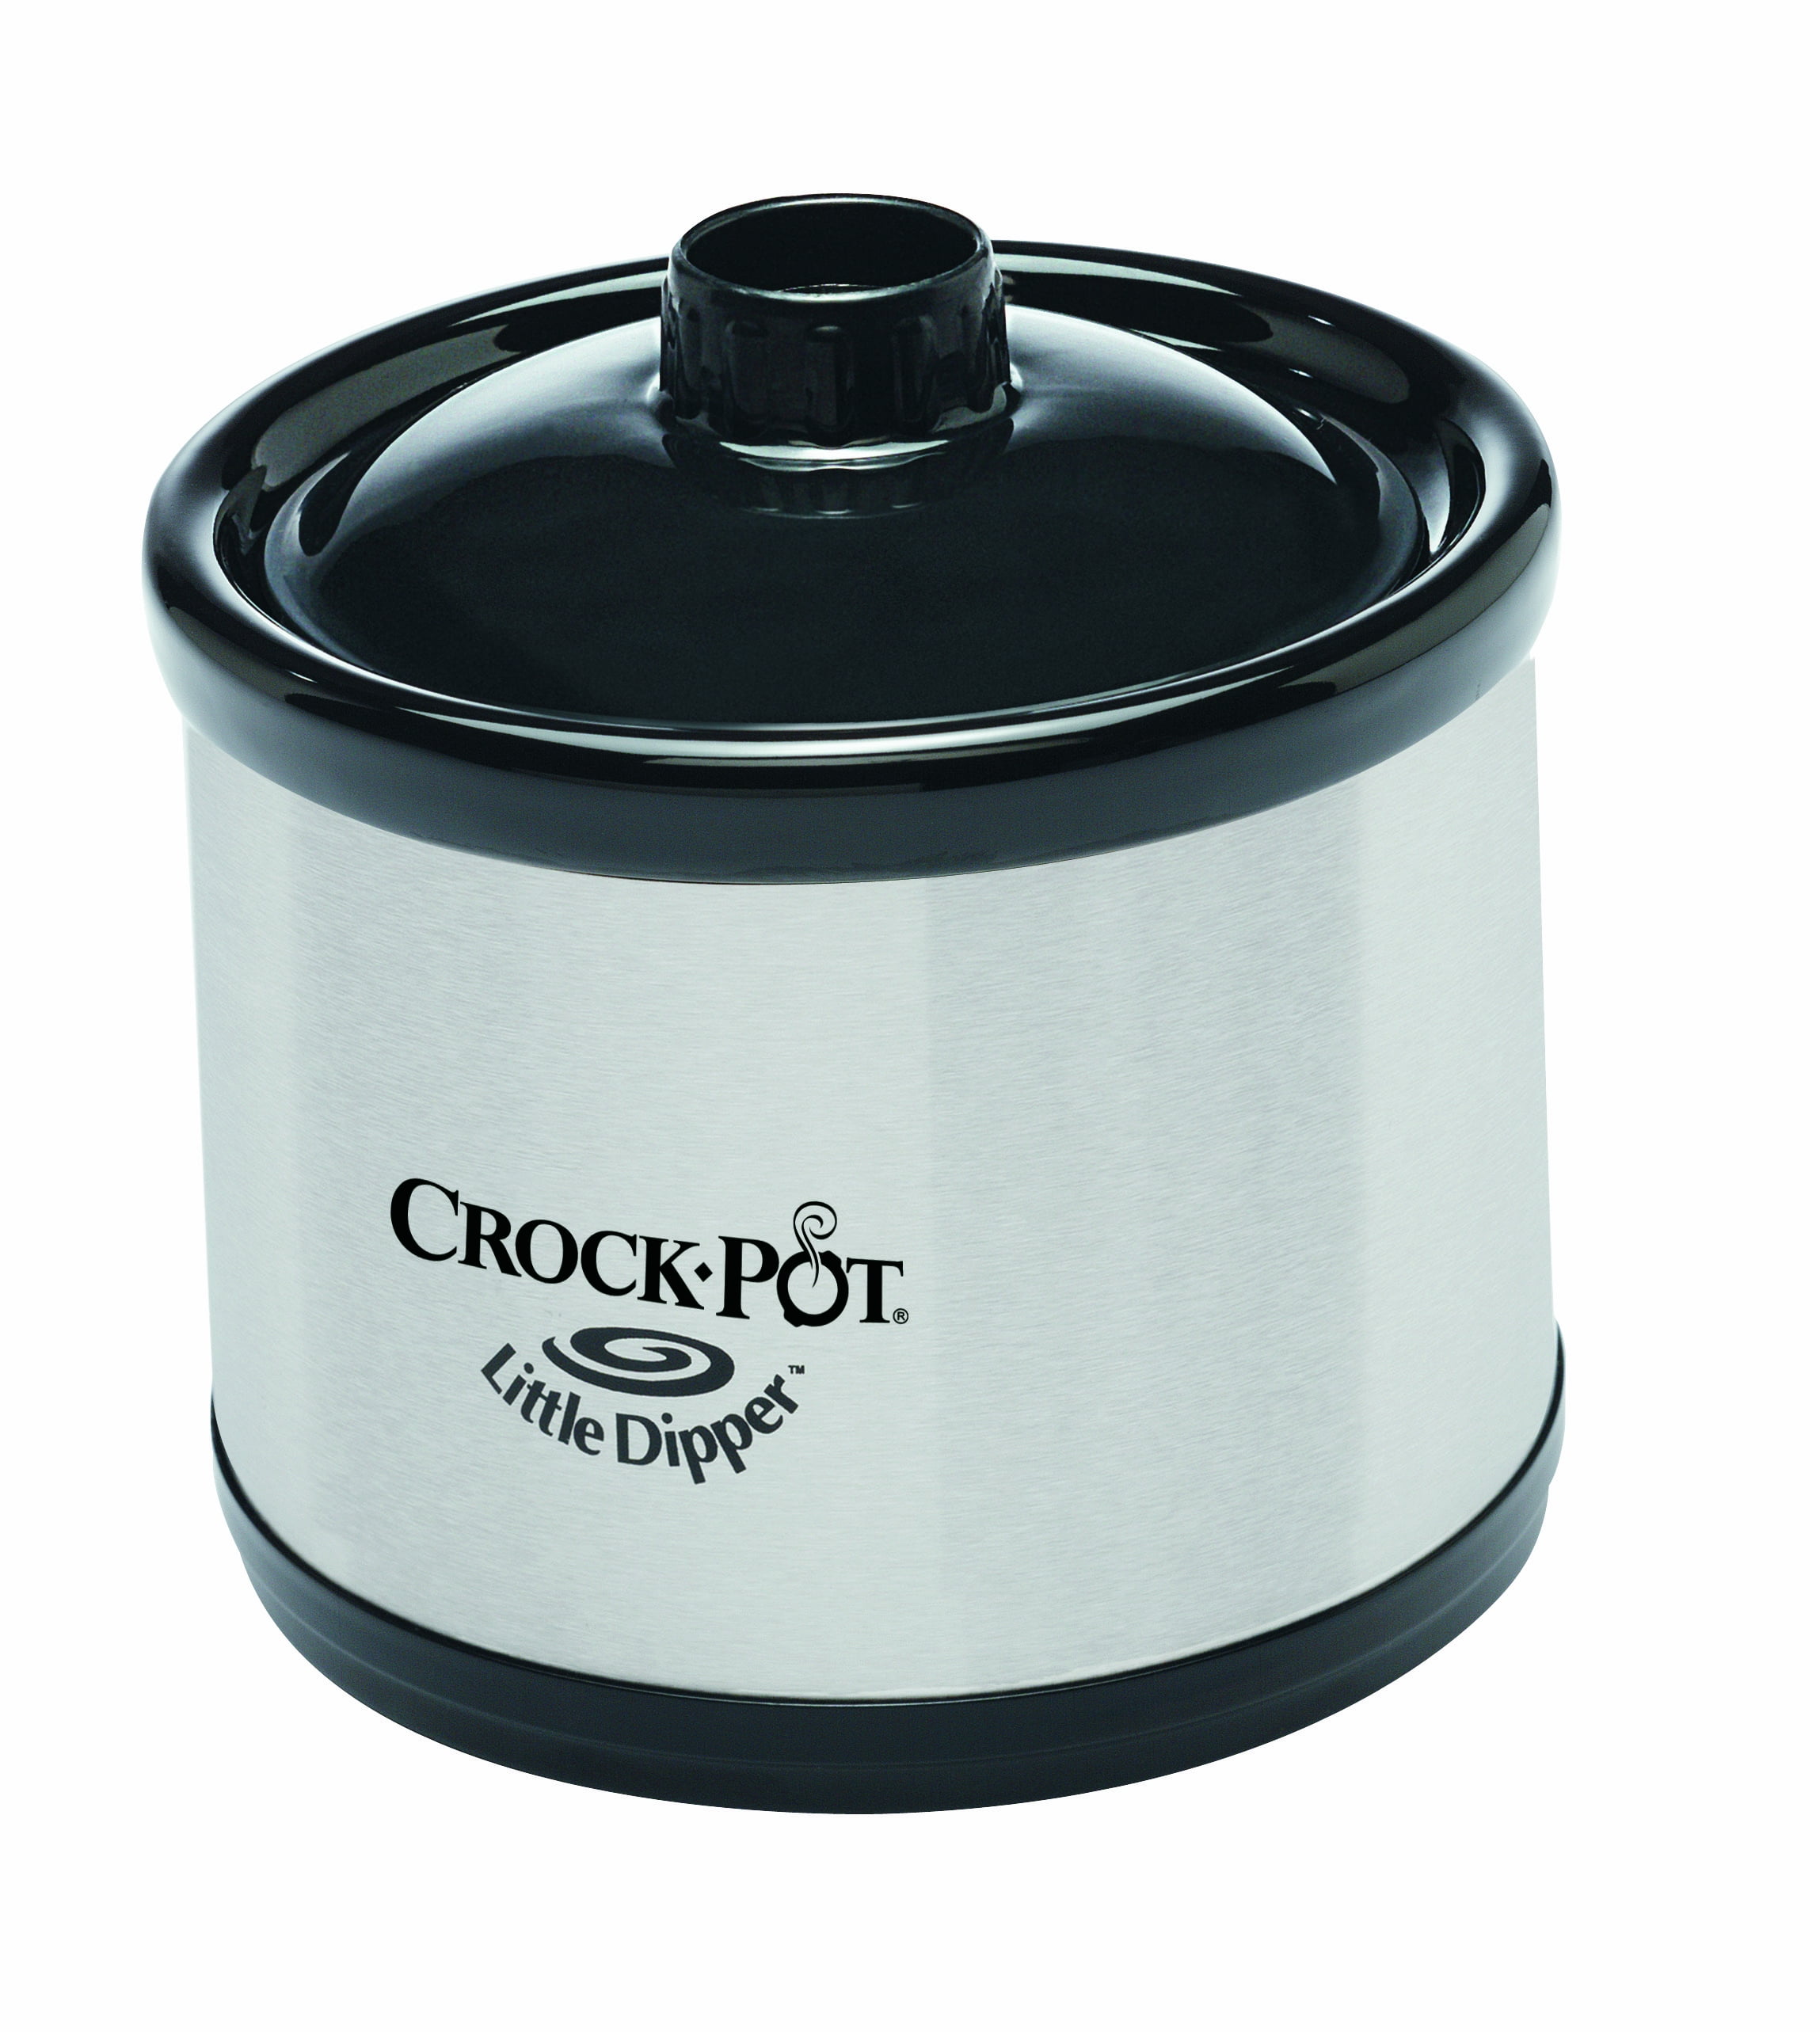 Crock Pot Little Dipper 16 oz Mini Slow Cooker Stainless Steel Model  SCR-05-SC